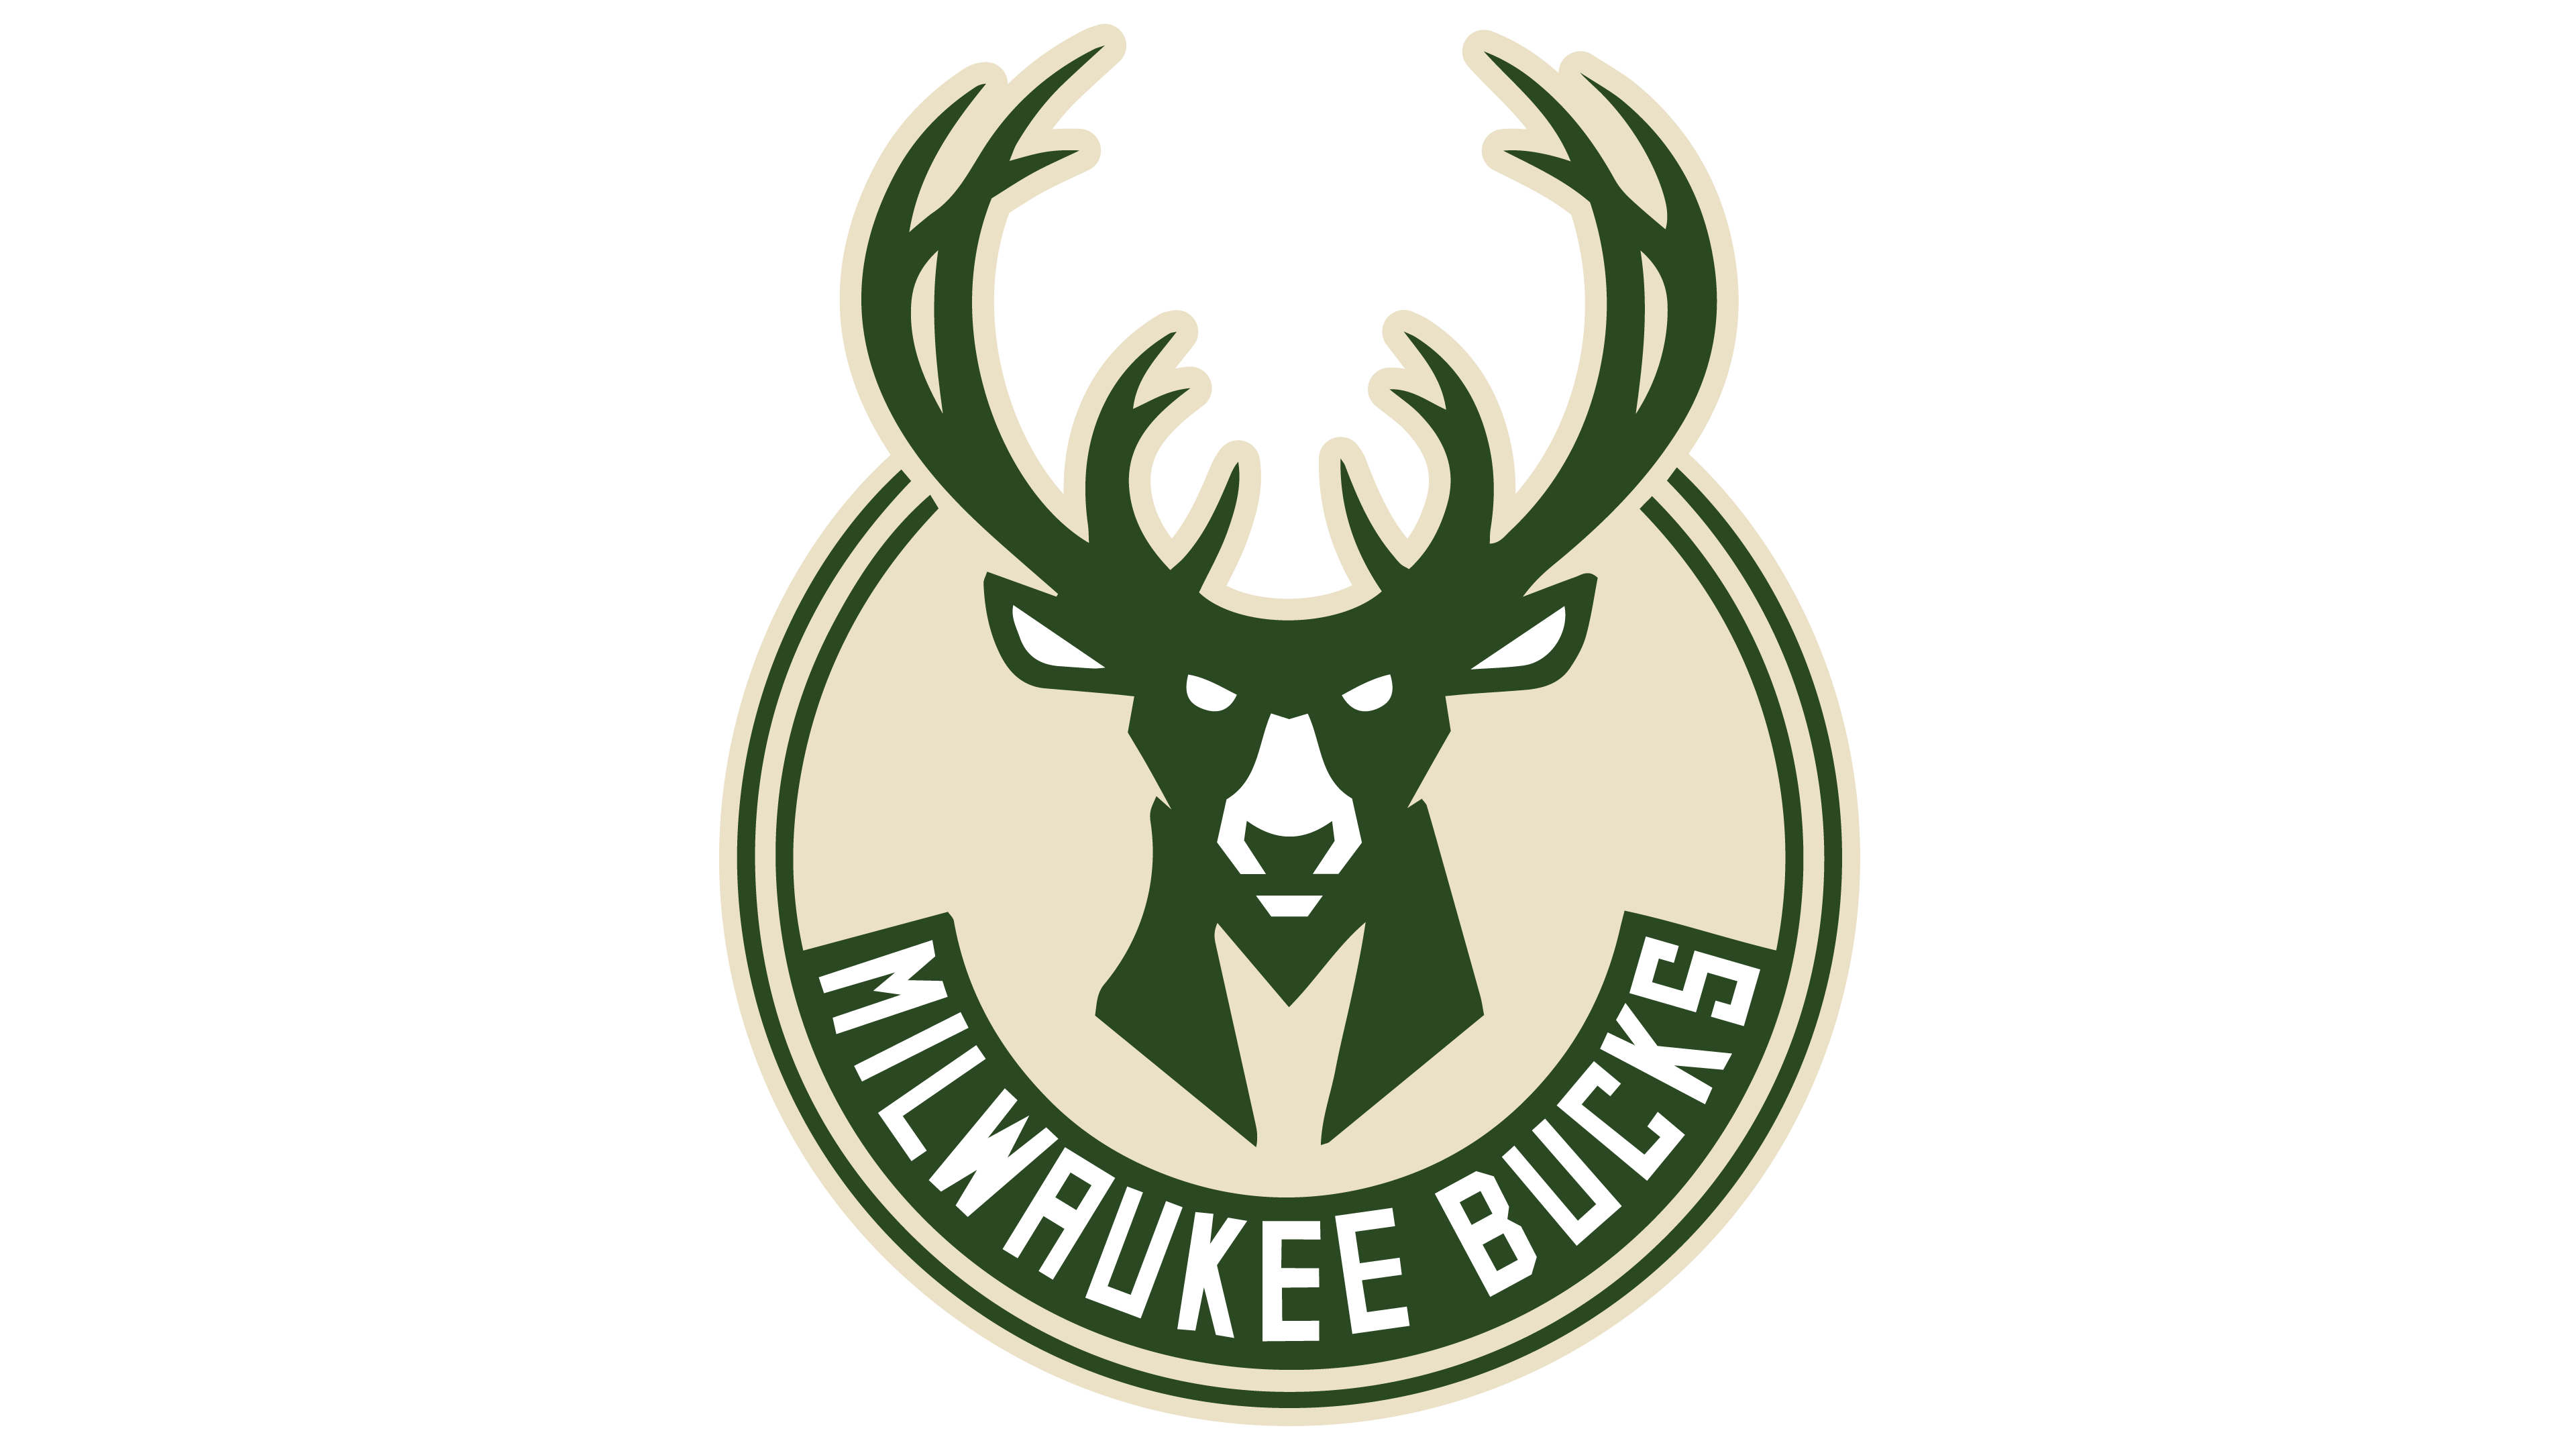 ¡Órale! 35+ Verdades reales que no sabías antes sobre Milwaukee Bucks